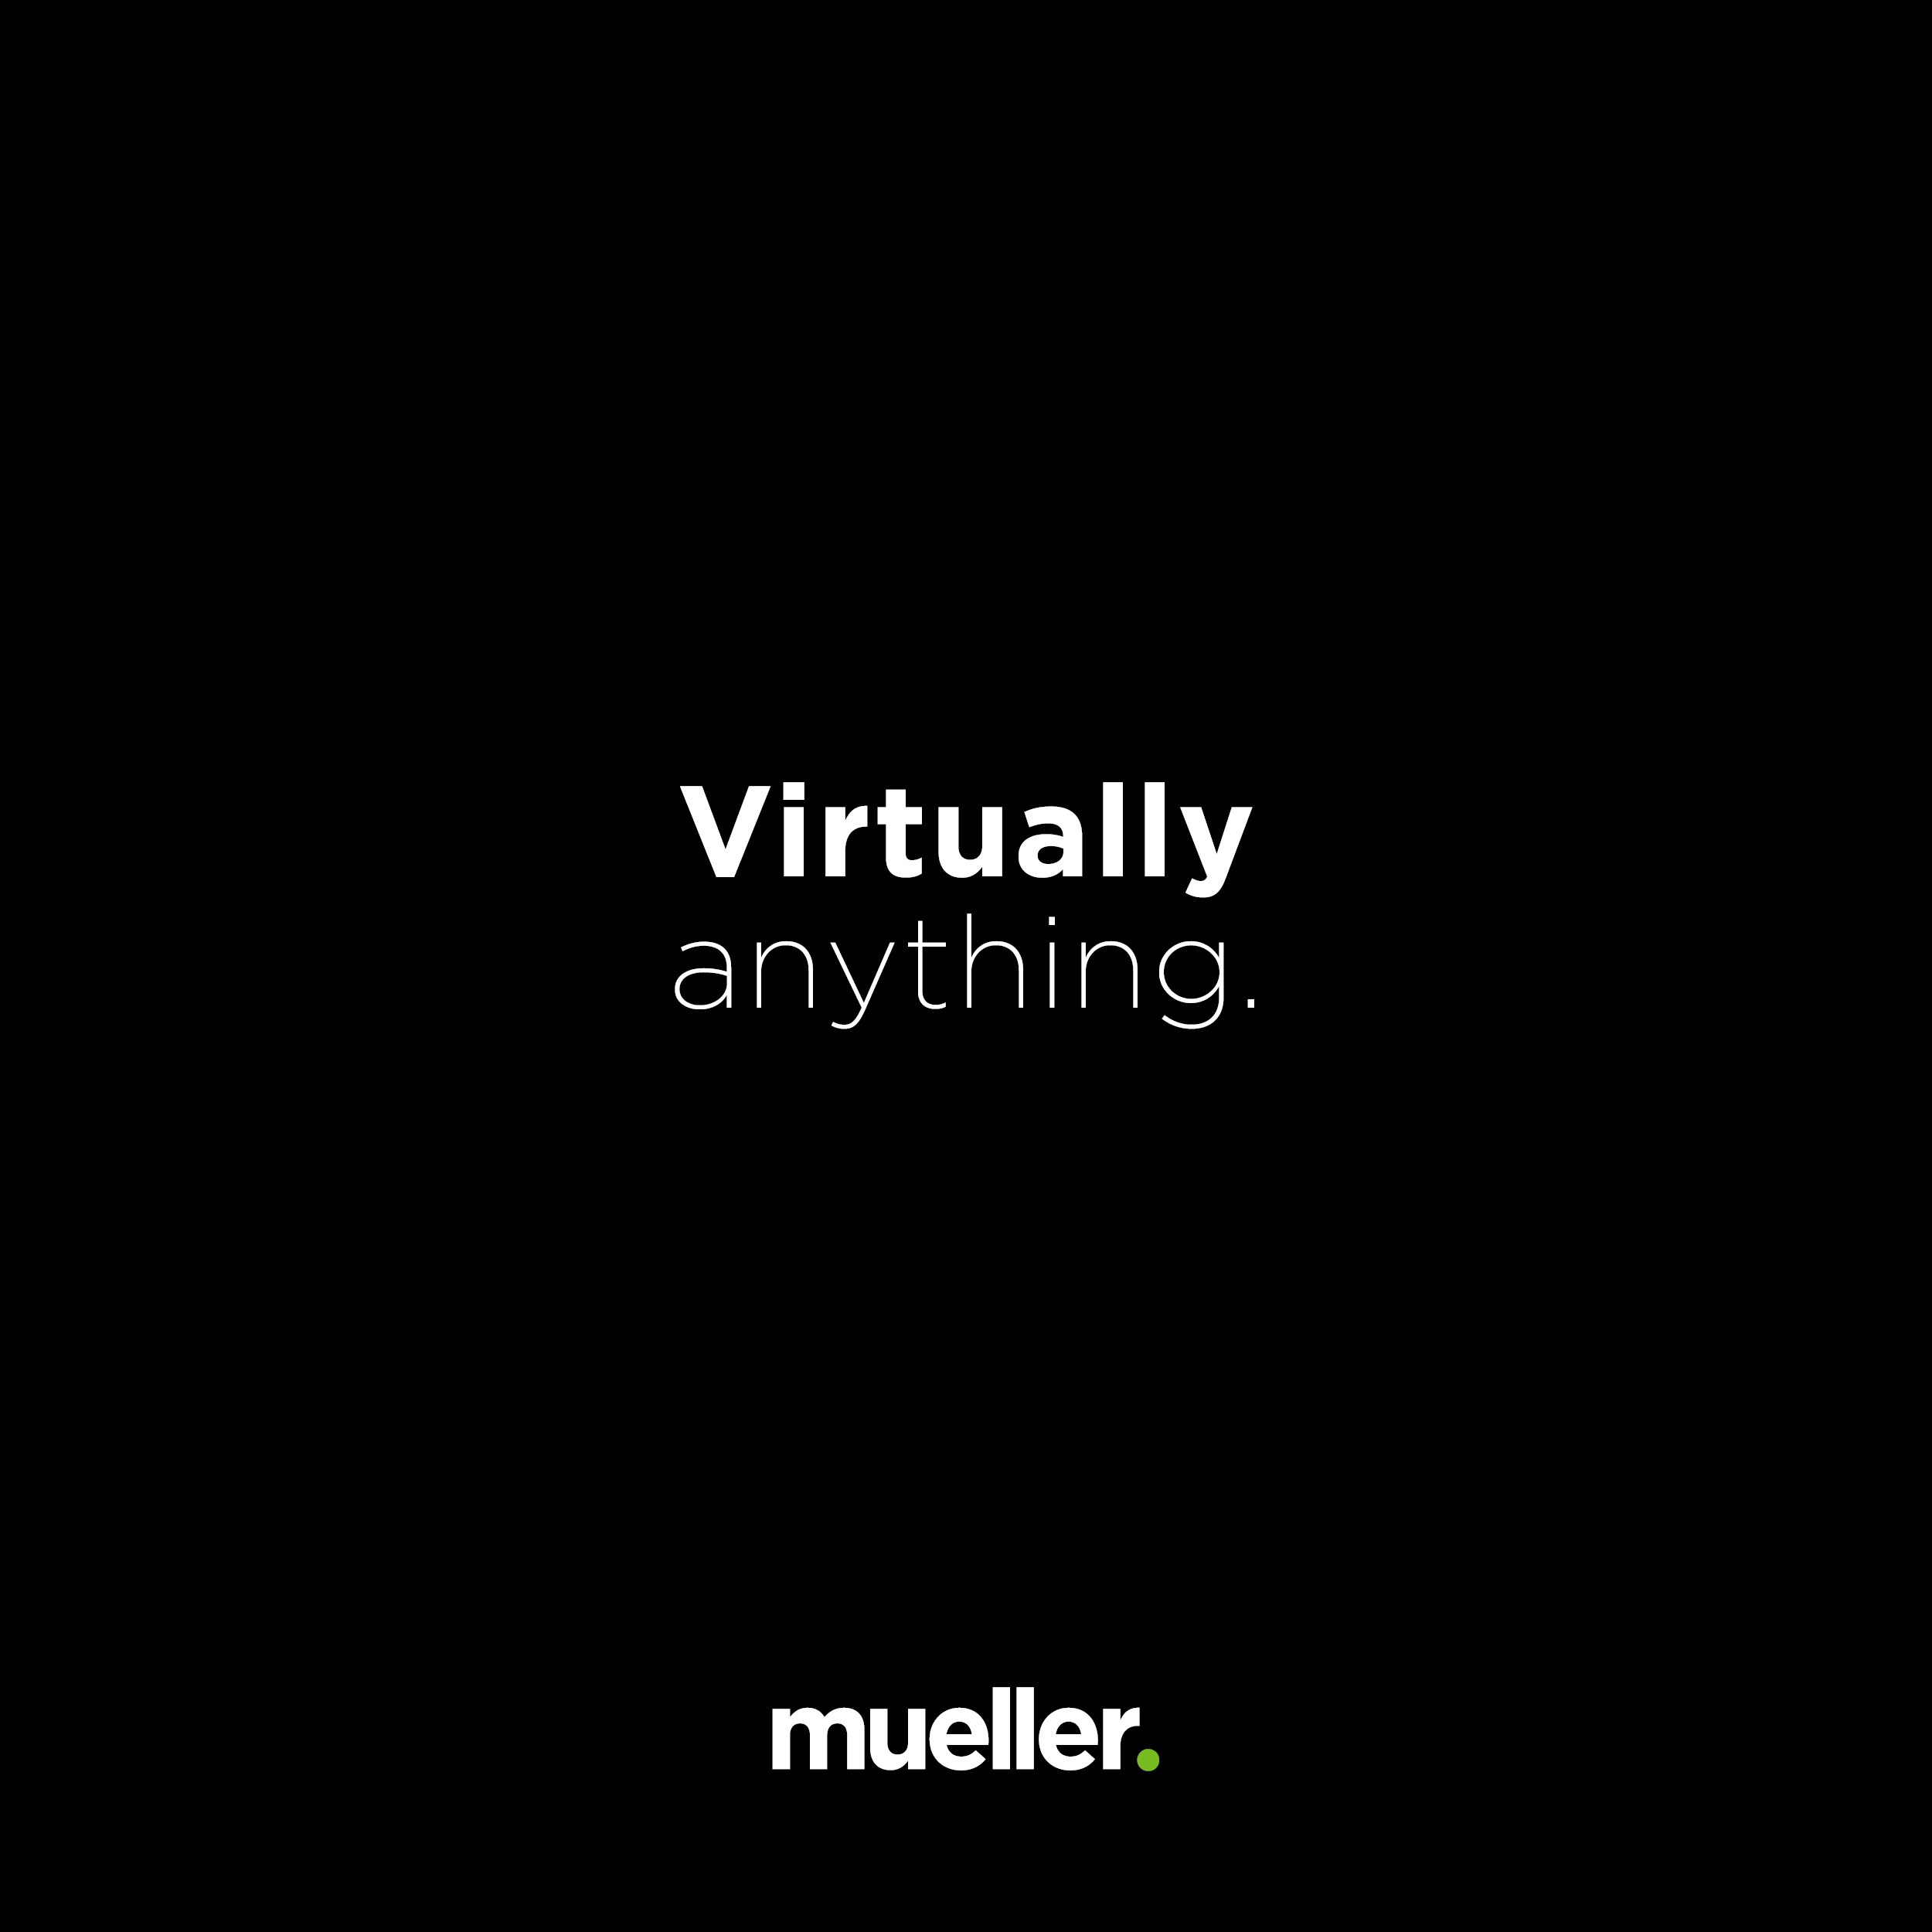 Virtually anything.